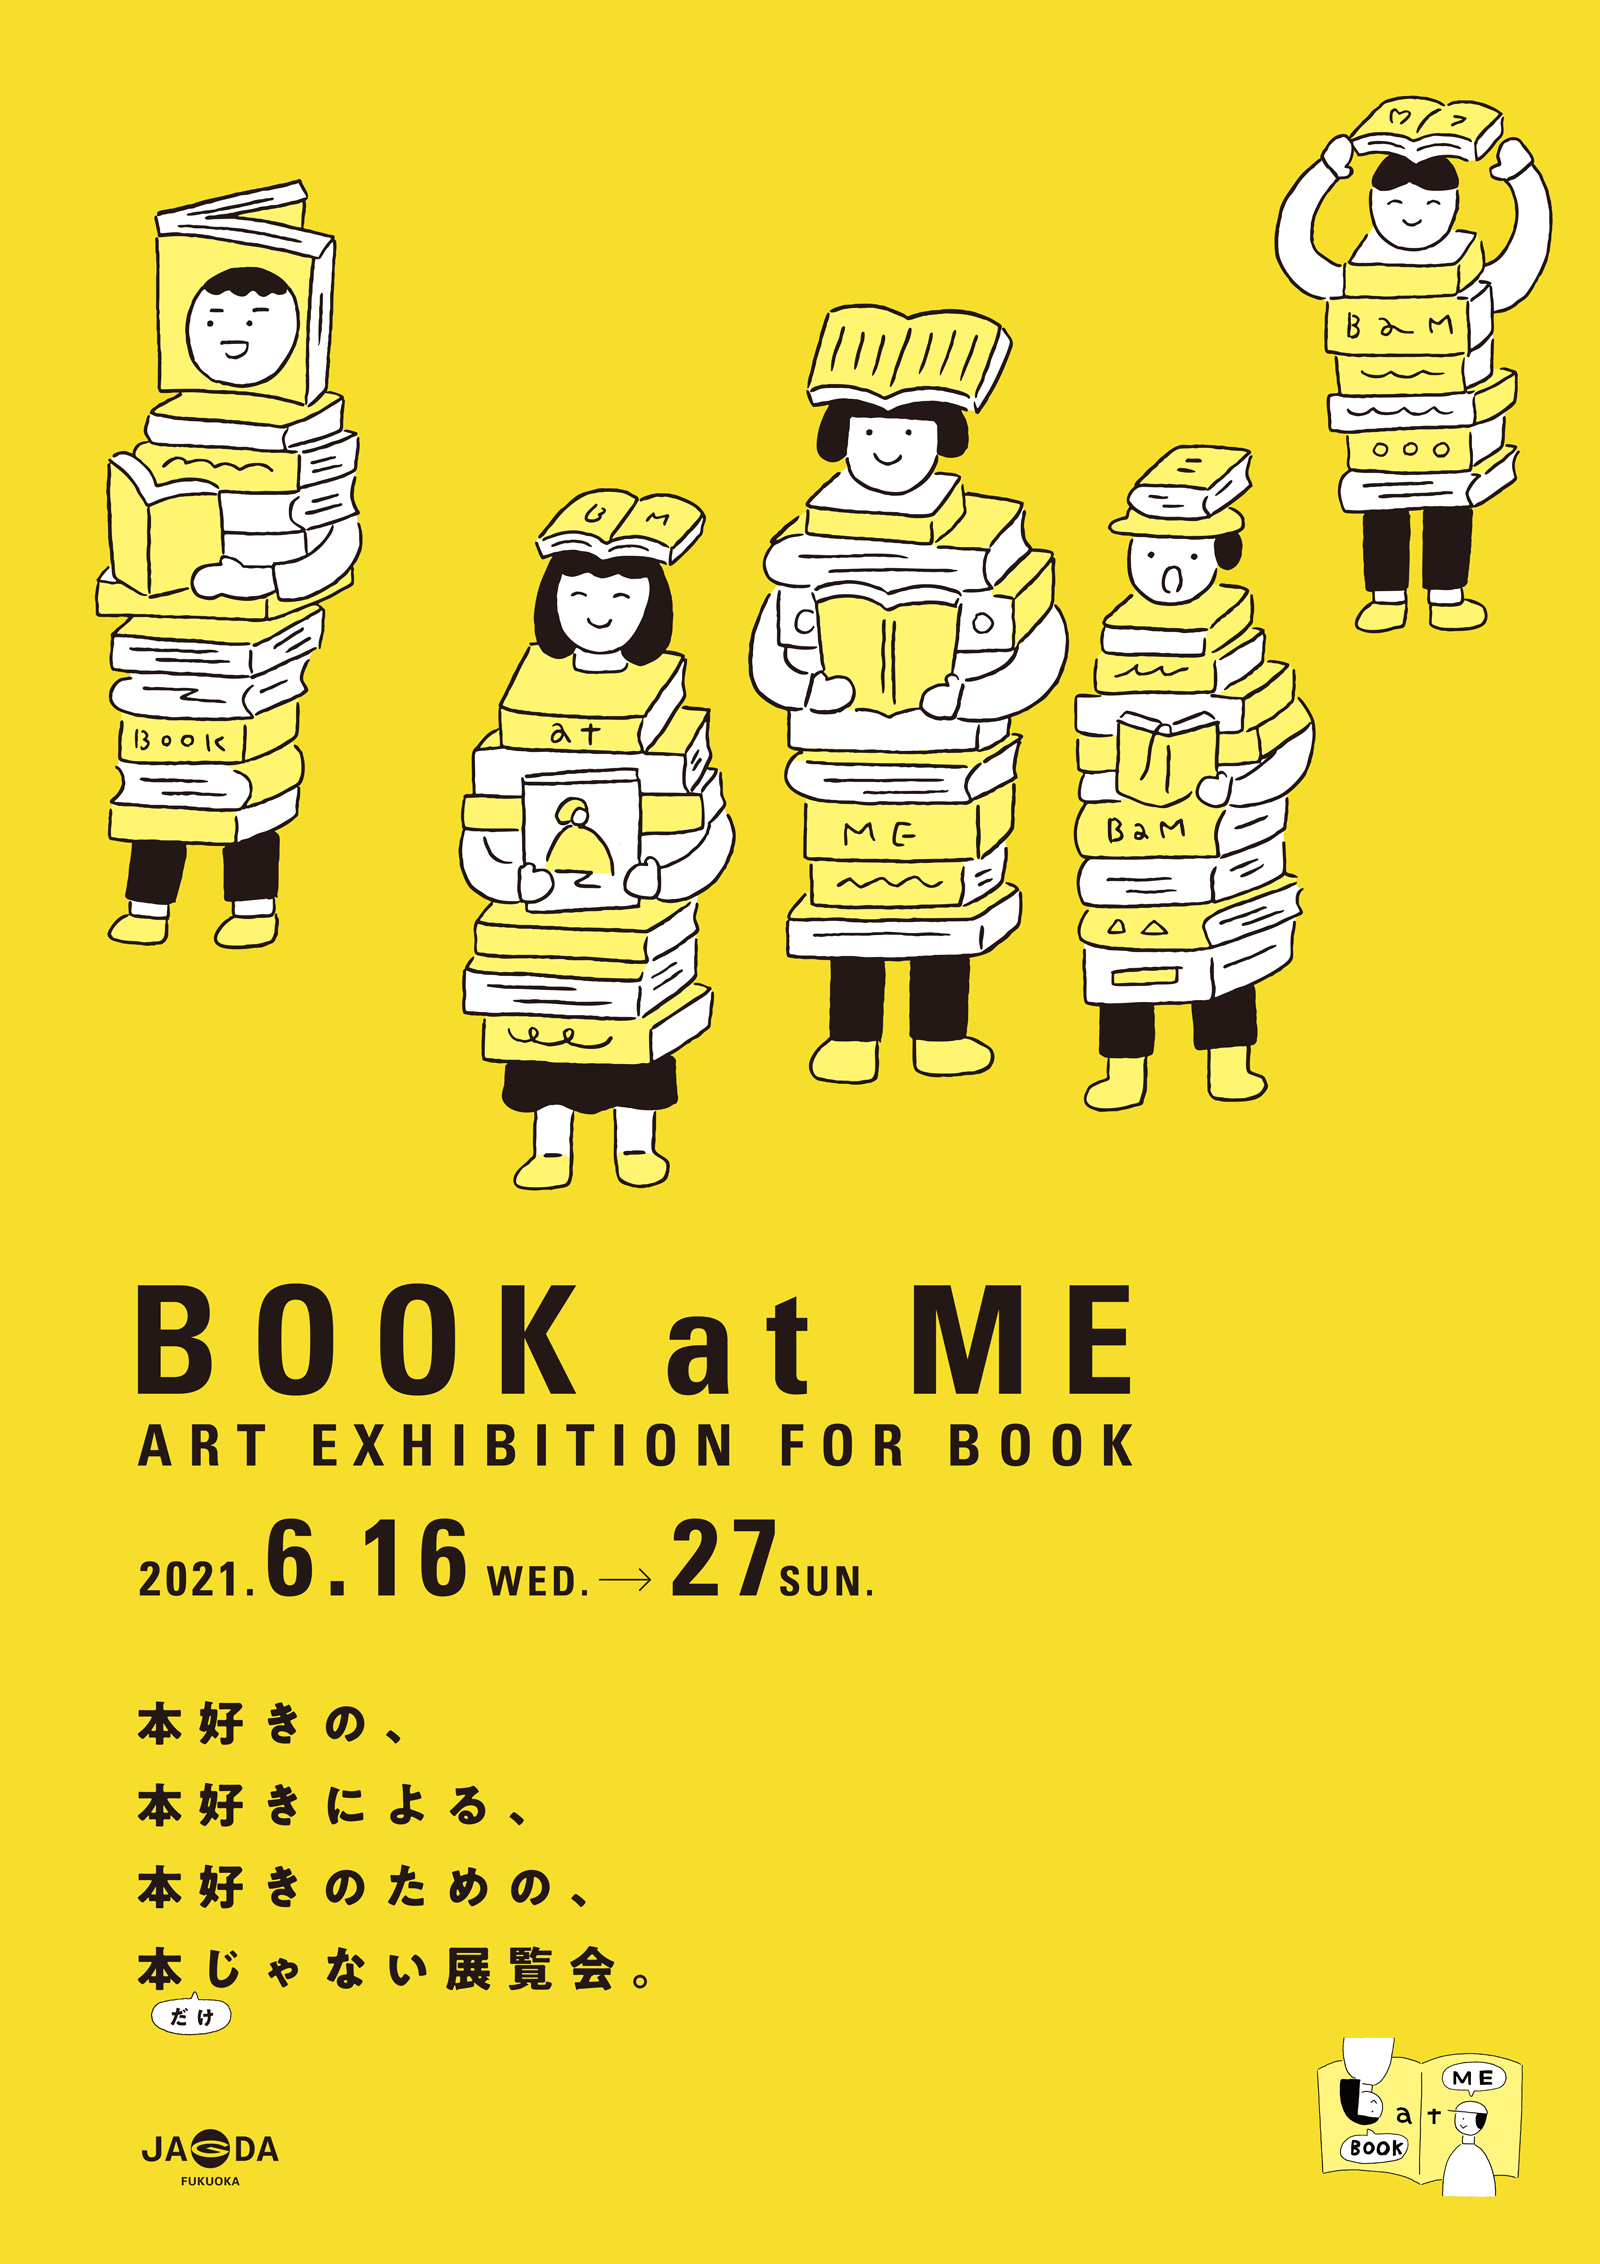 BOOK at ME 2021【JAGDA福岡】